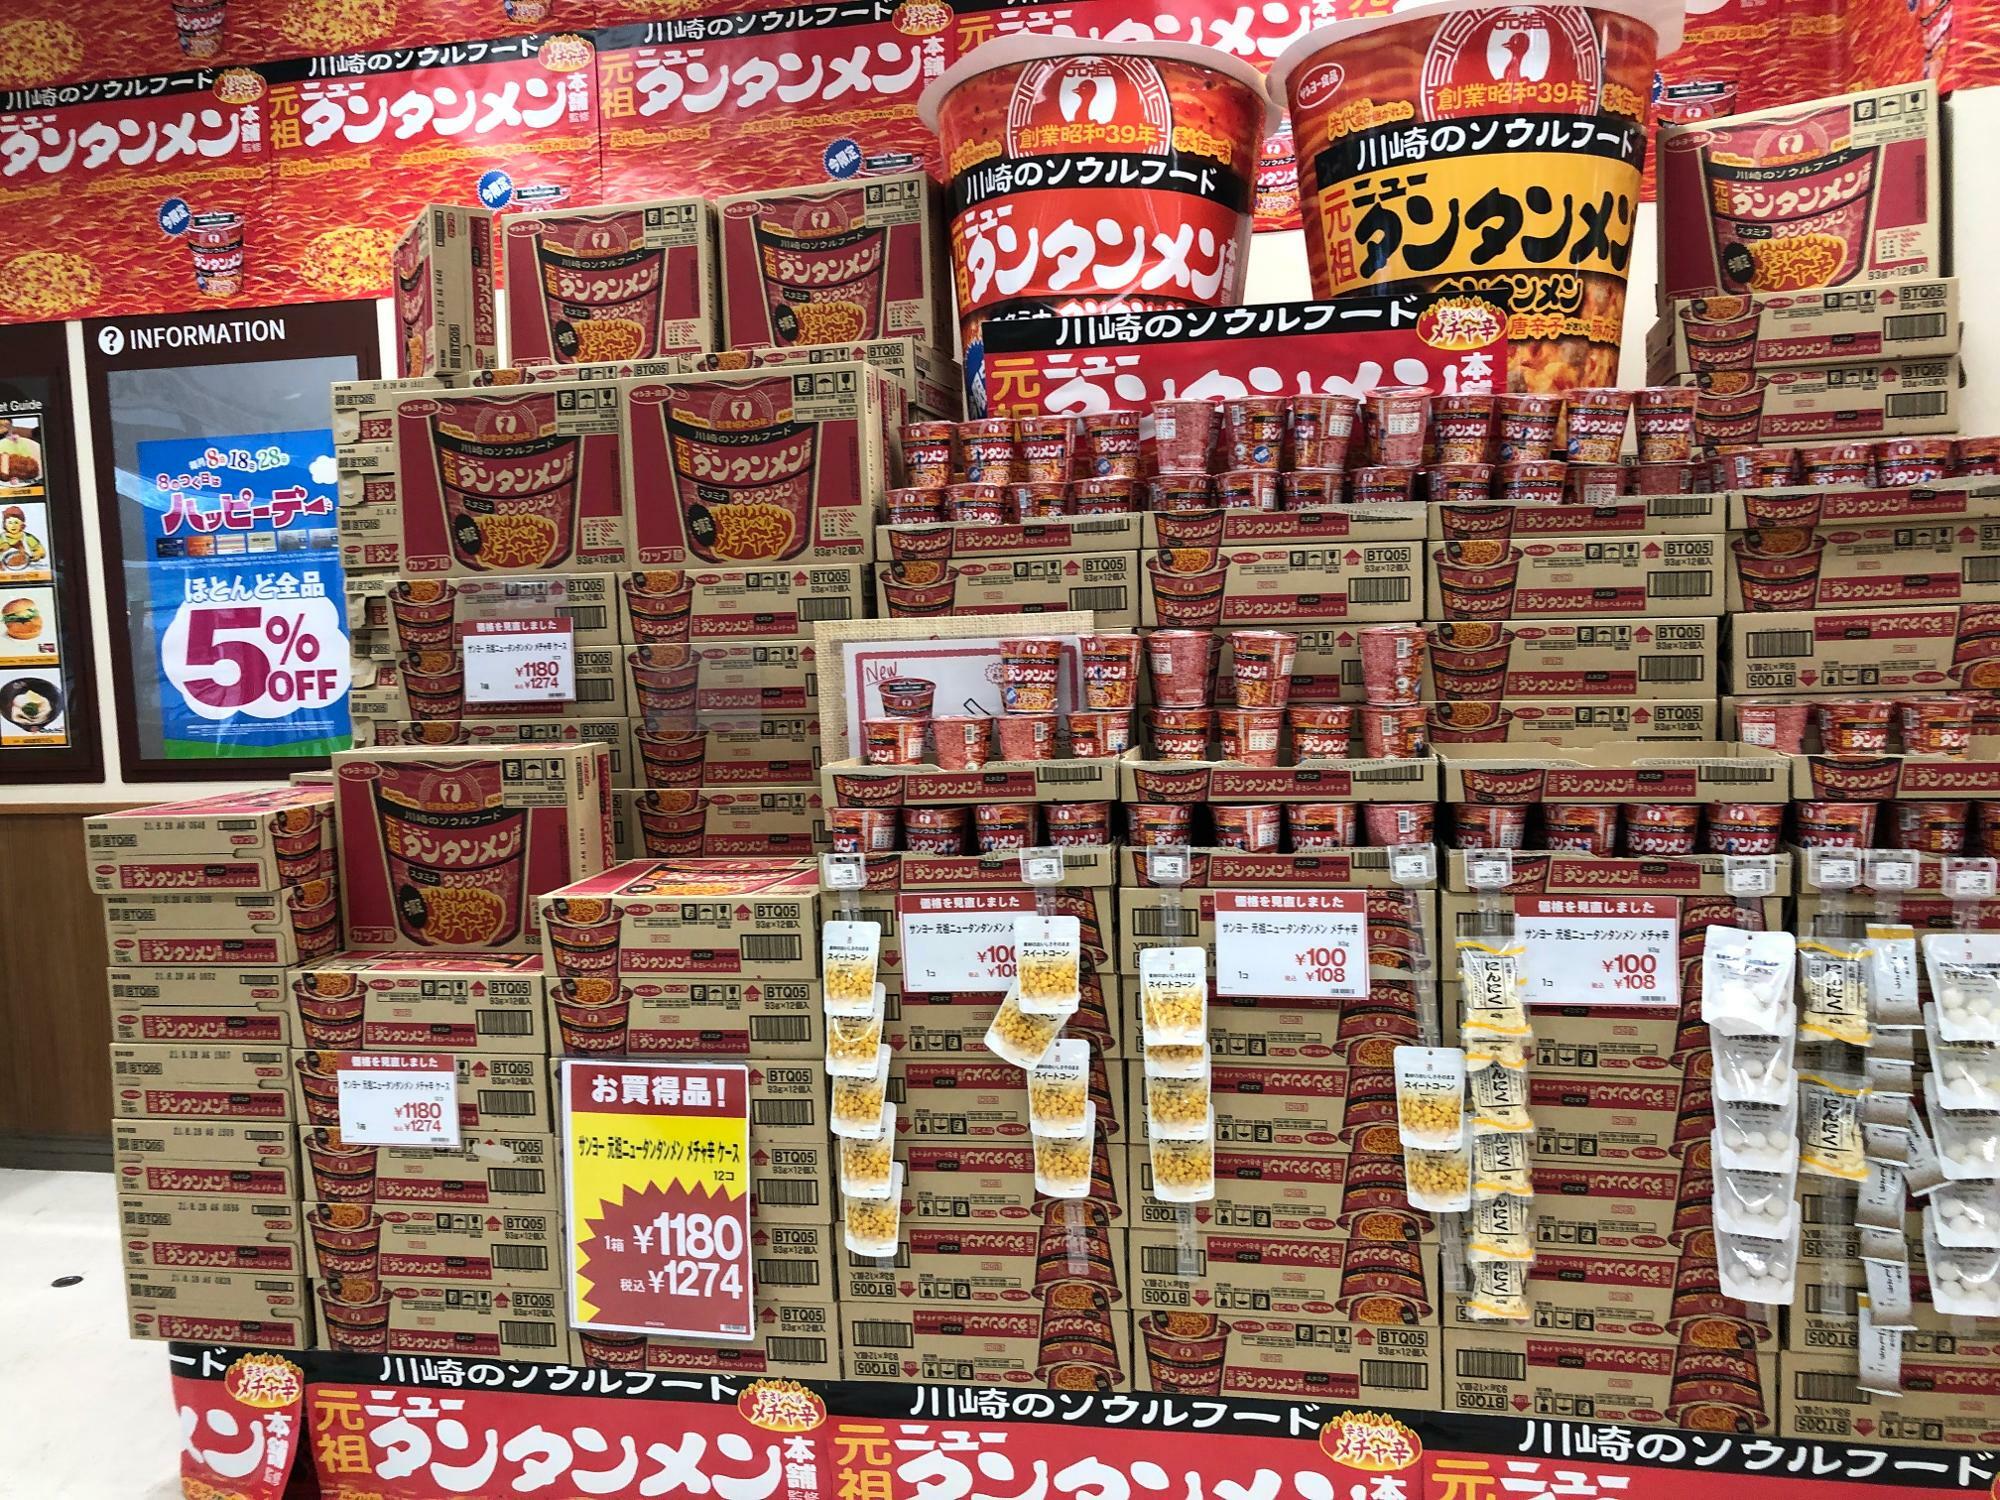 本店から近い小田栄のスーパーではこんなに山積みだったことも